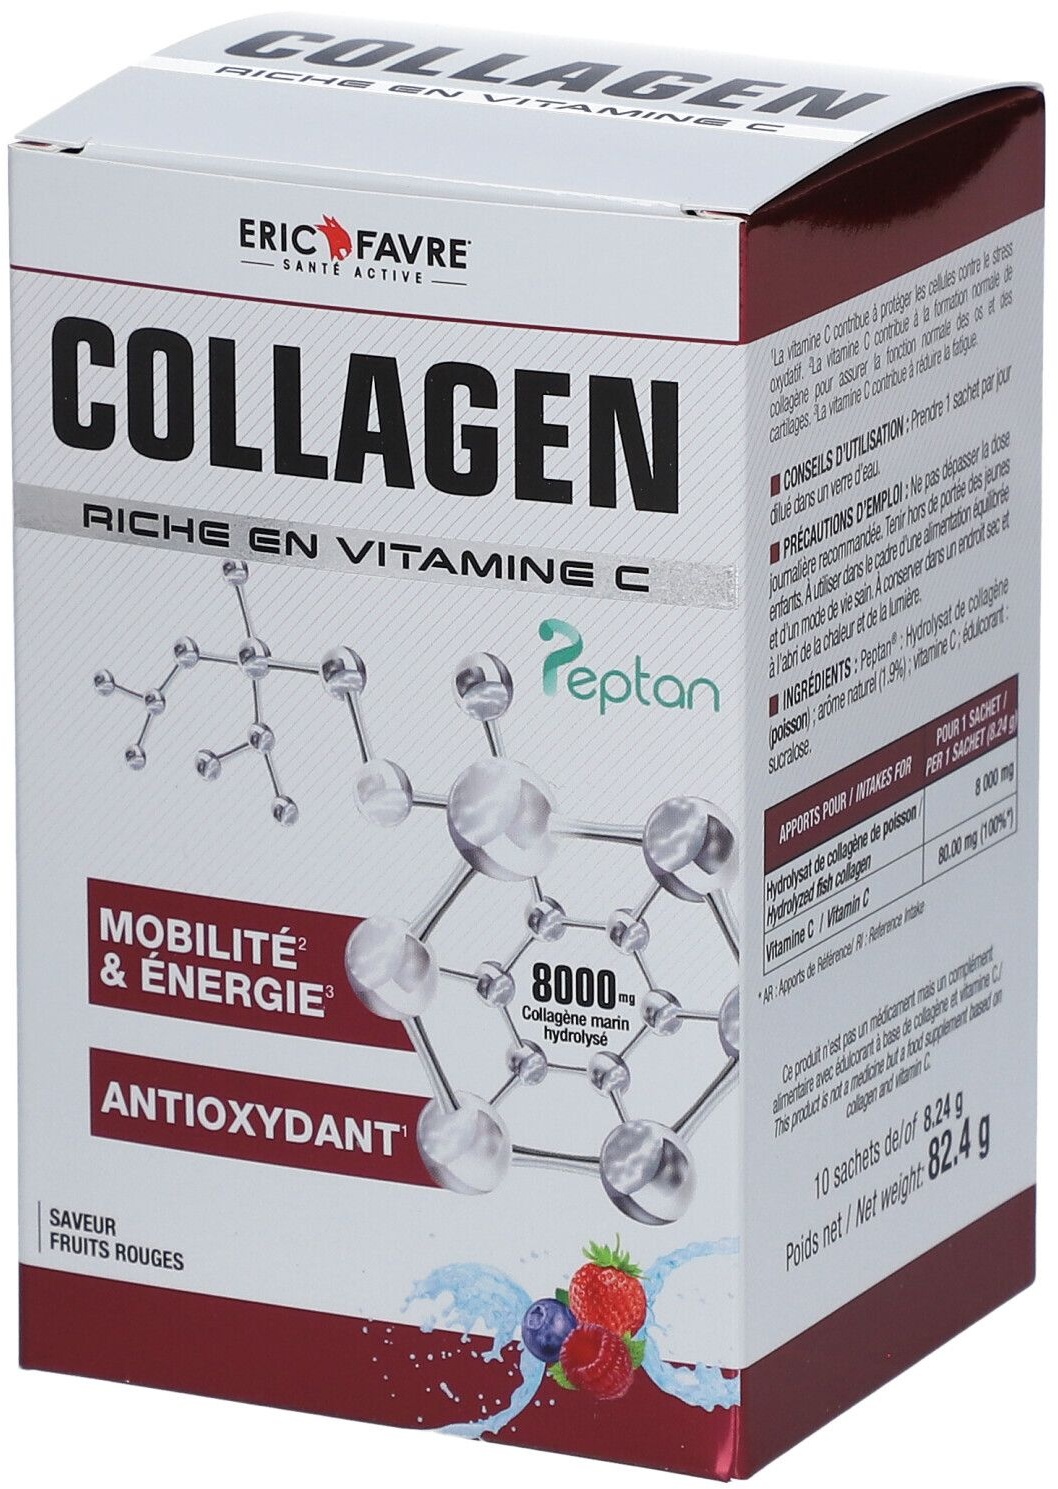 ERIC FAVRE Collagen Peptan en poudre - Collagène marin hydrolysé et enrichi en vitamine C 10 pc(s) sachet(s)